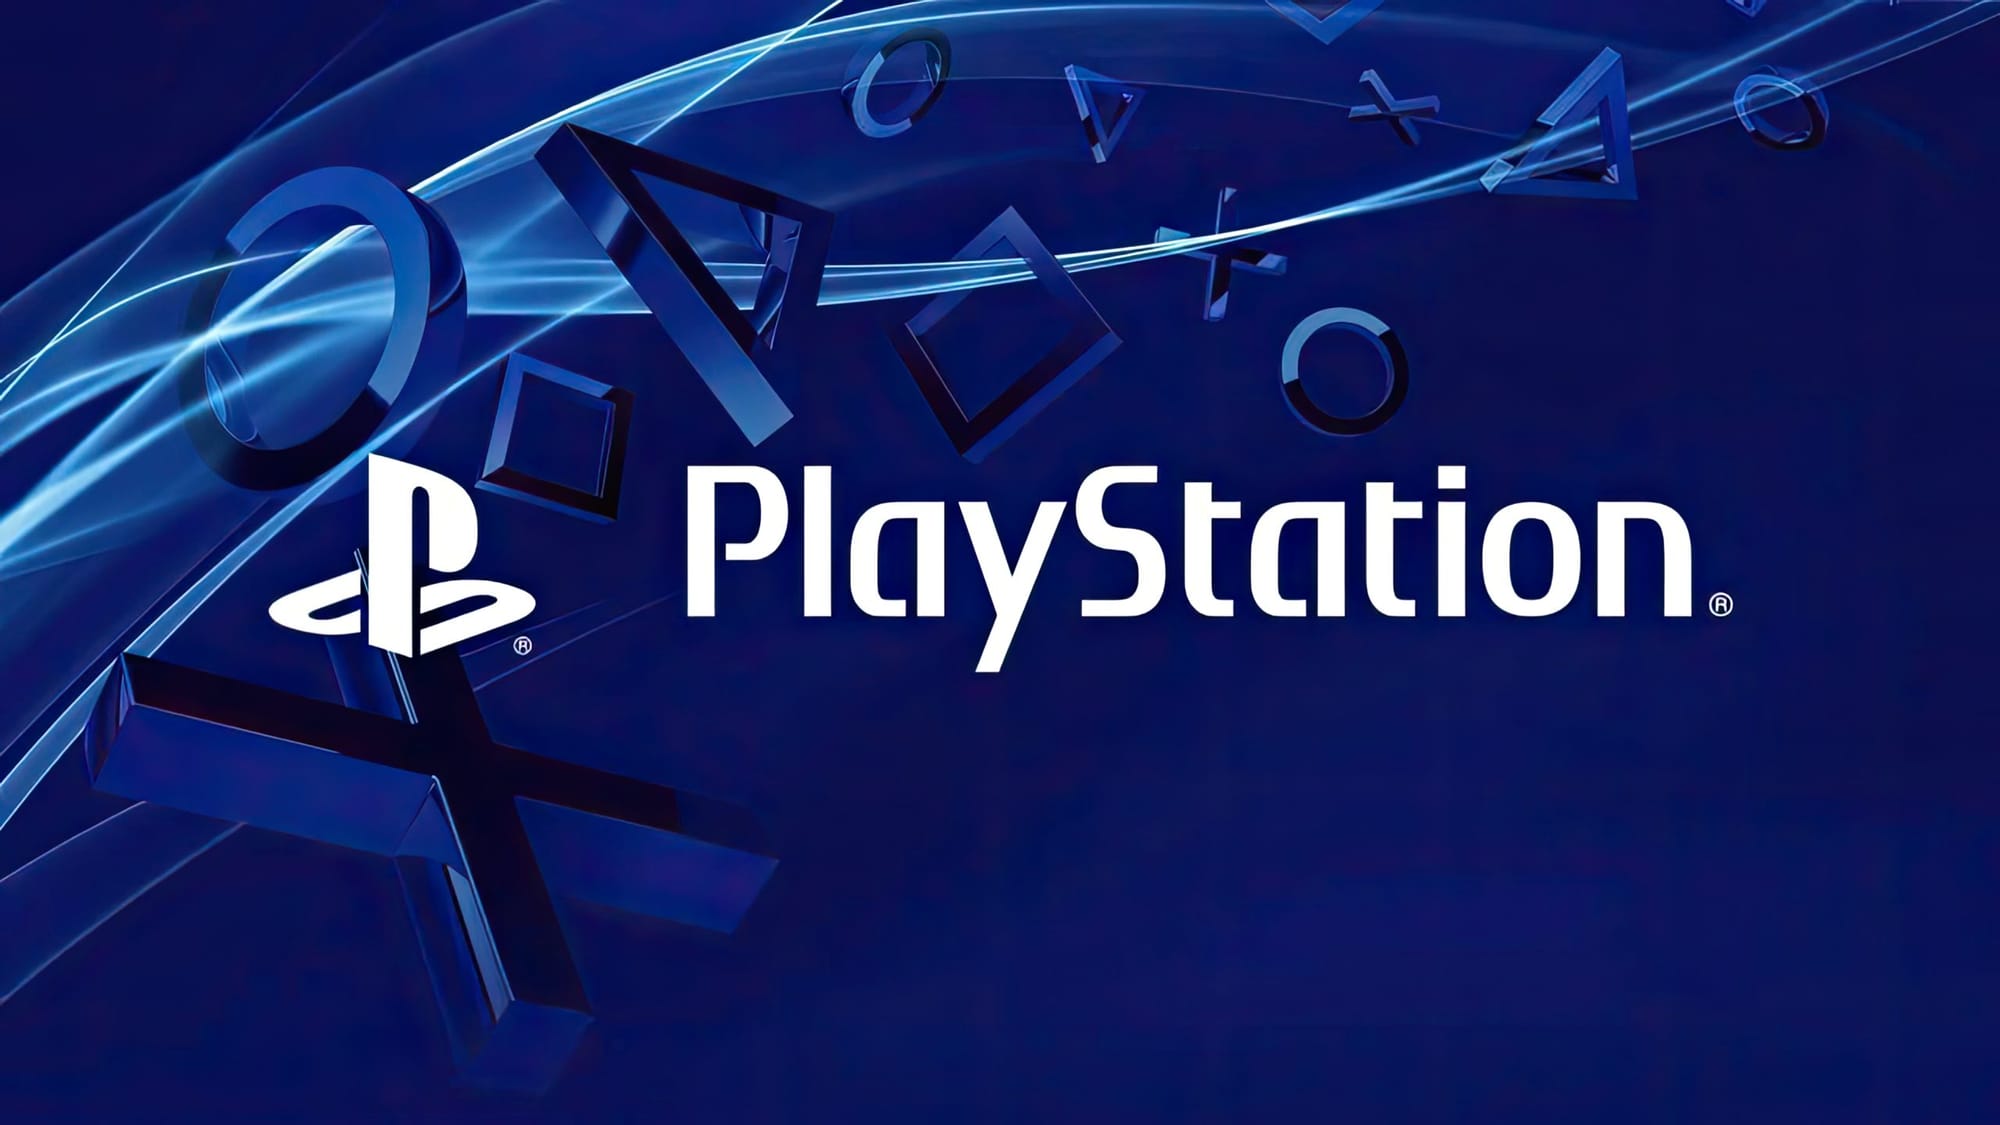 PlayStation будет на ПК, в облаке и на мобильных устройствах, заявил генеральный директор Sony